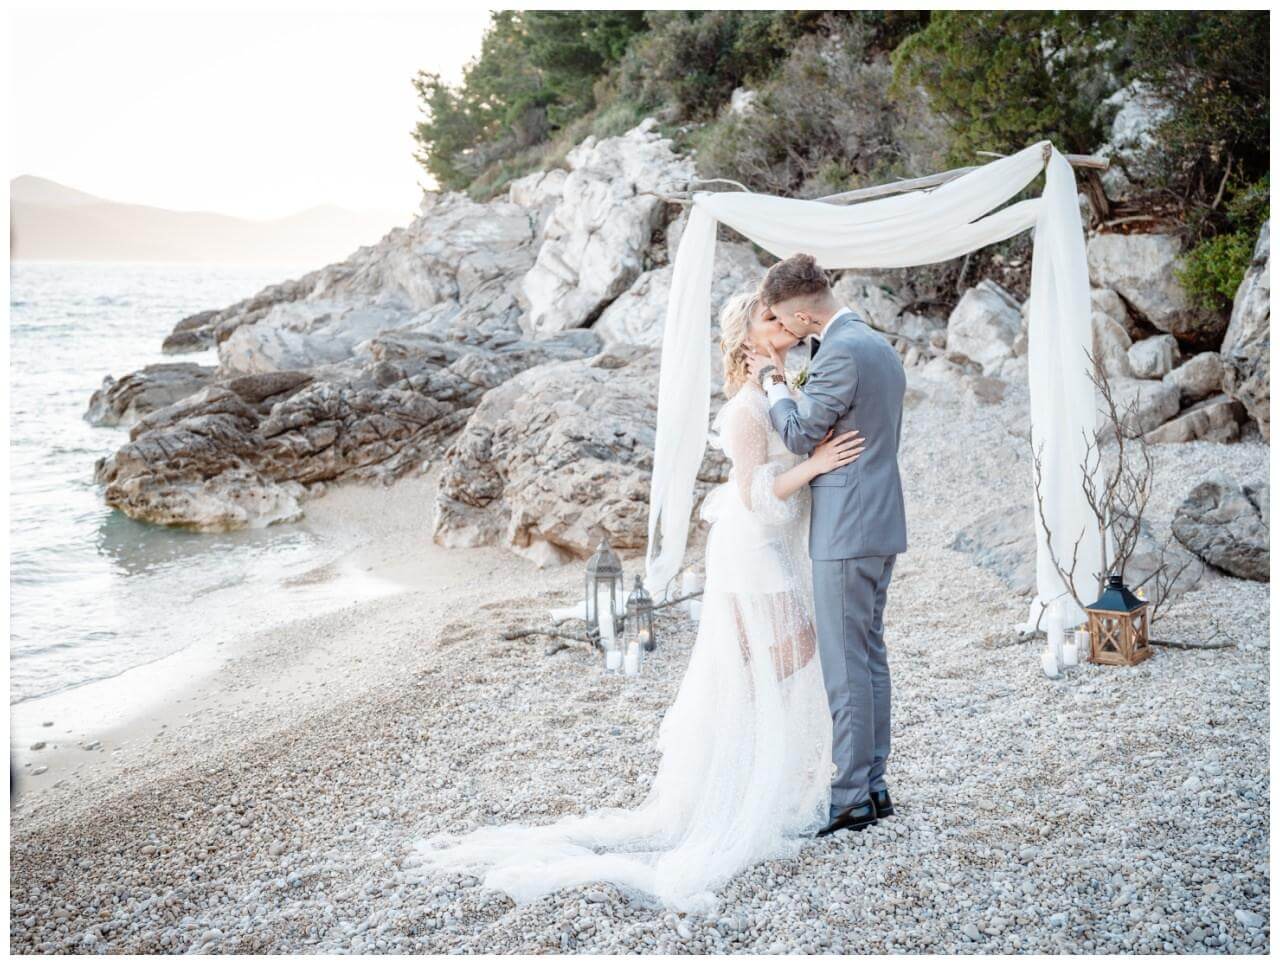 nachhaltige Hochzeit am Strand in Kroatien Hochzeitsfarbe Grau Austern